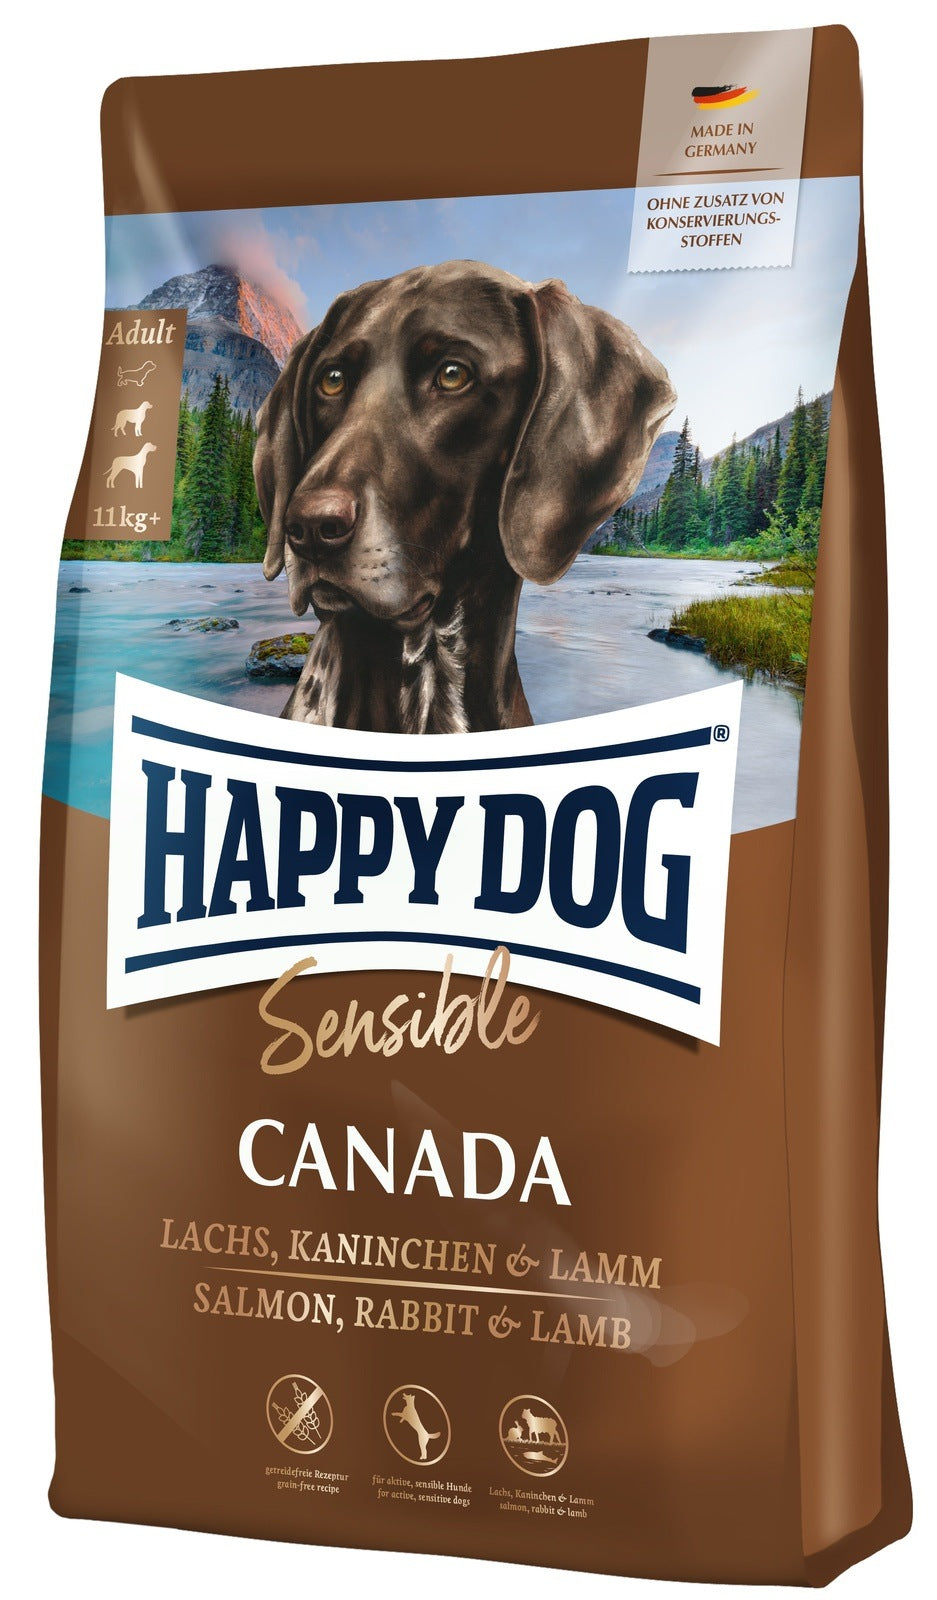 Happy Dog Supreme Sensible Canada - zoo.de